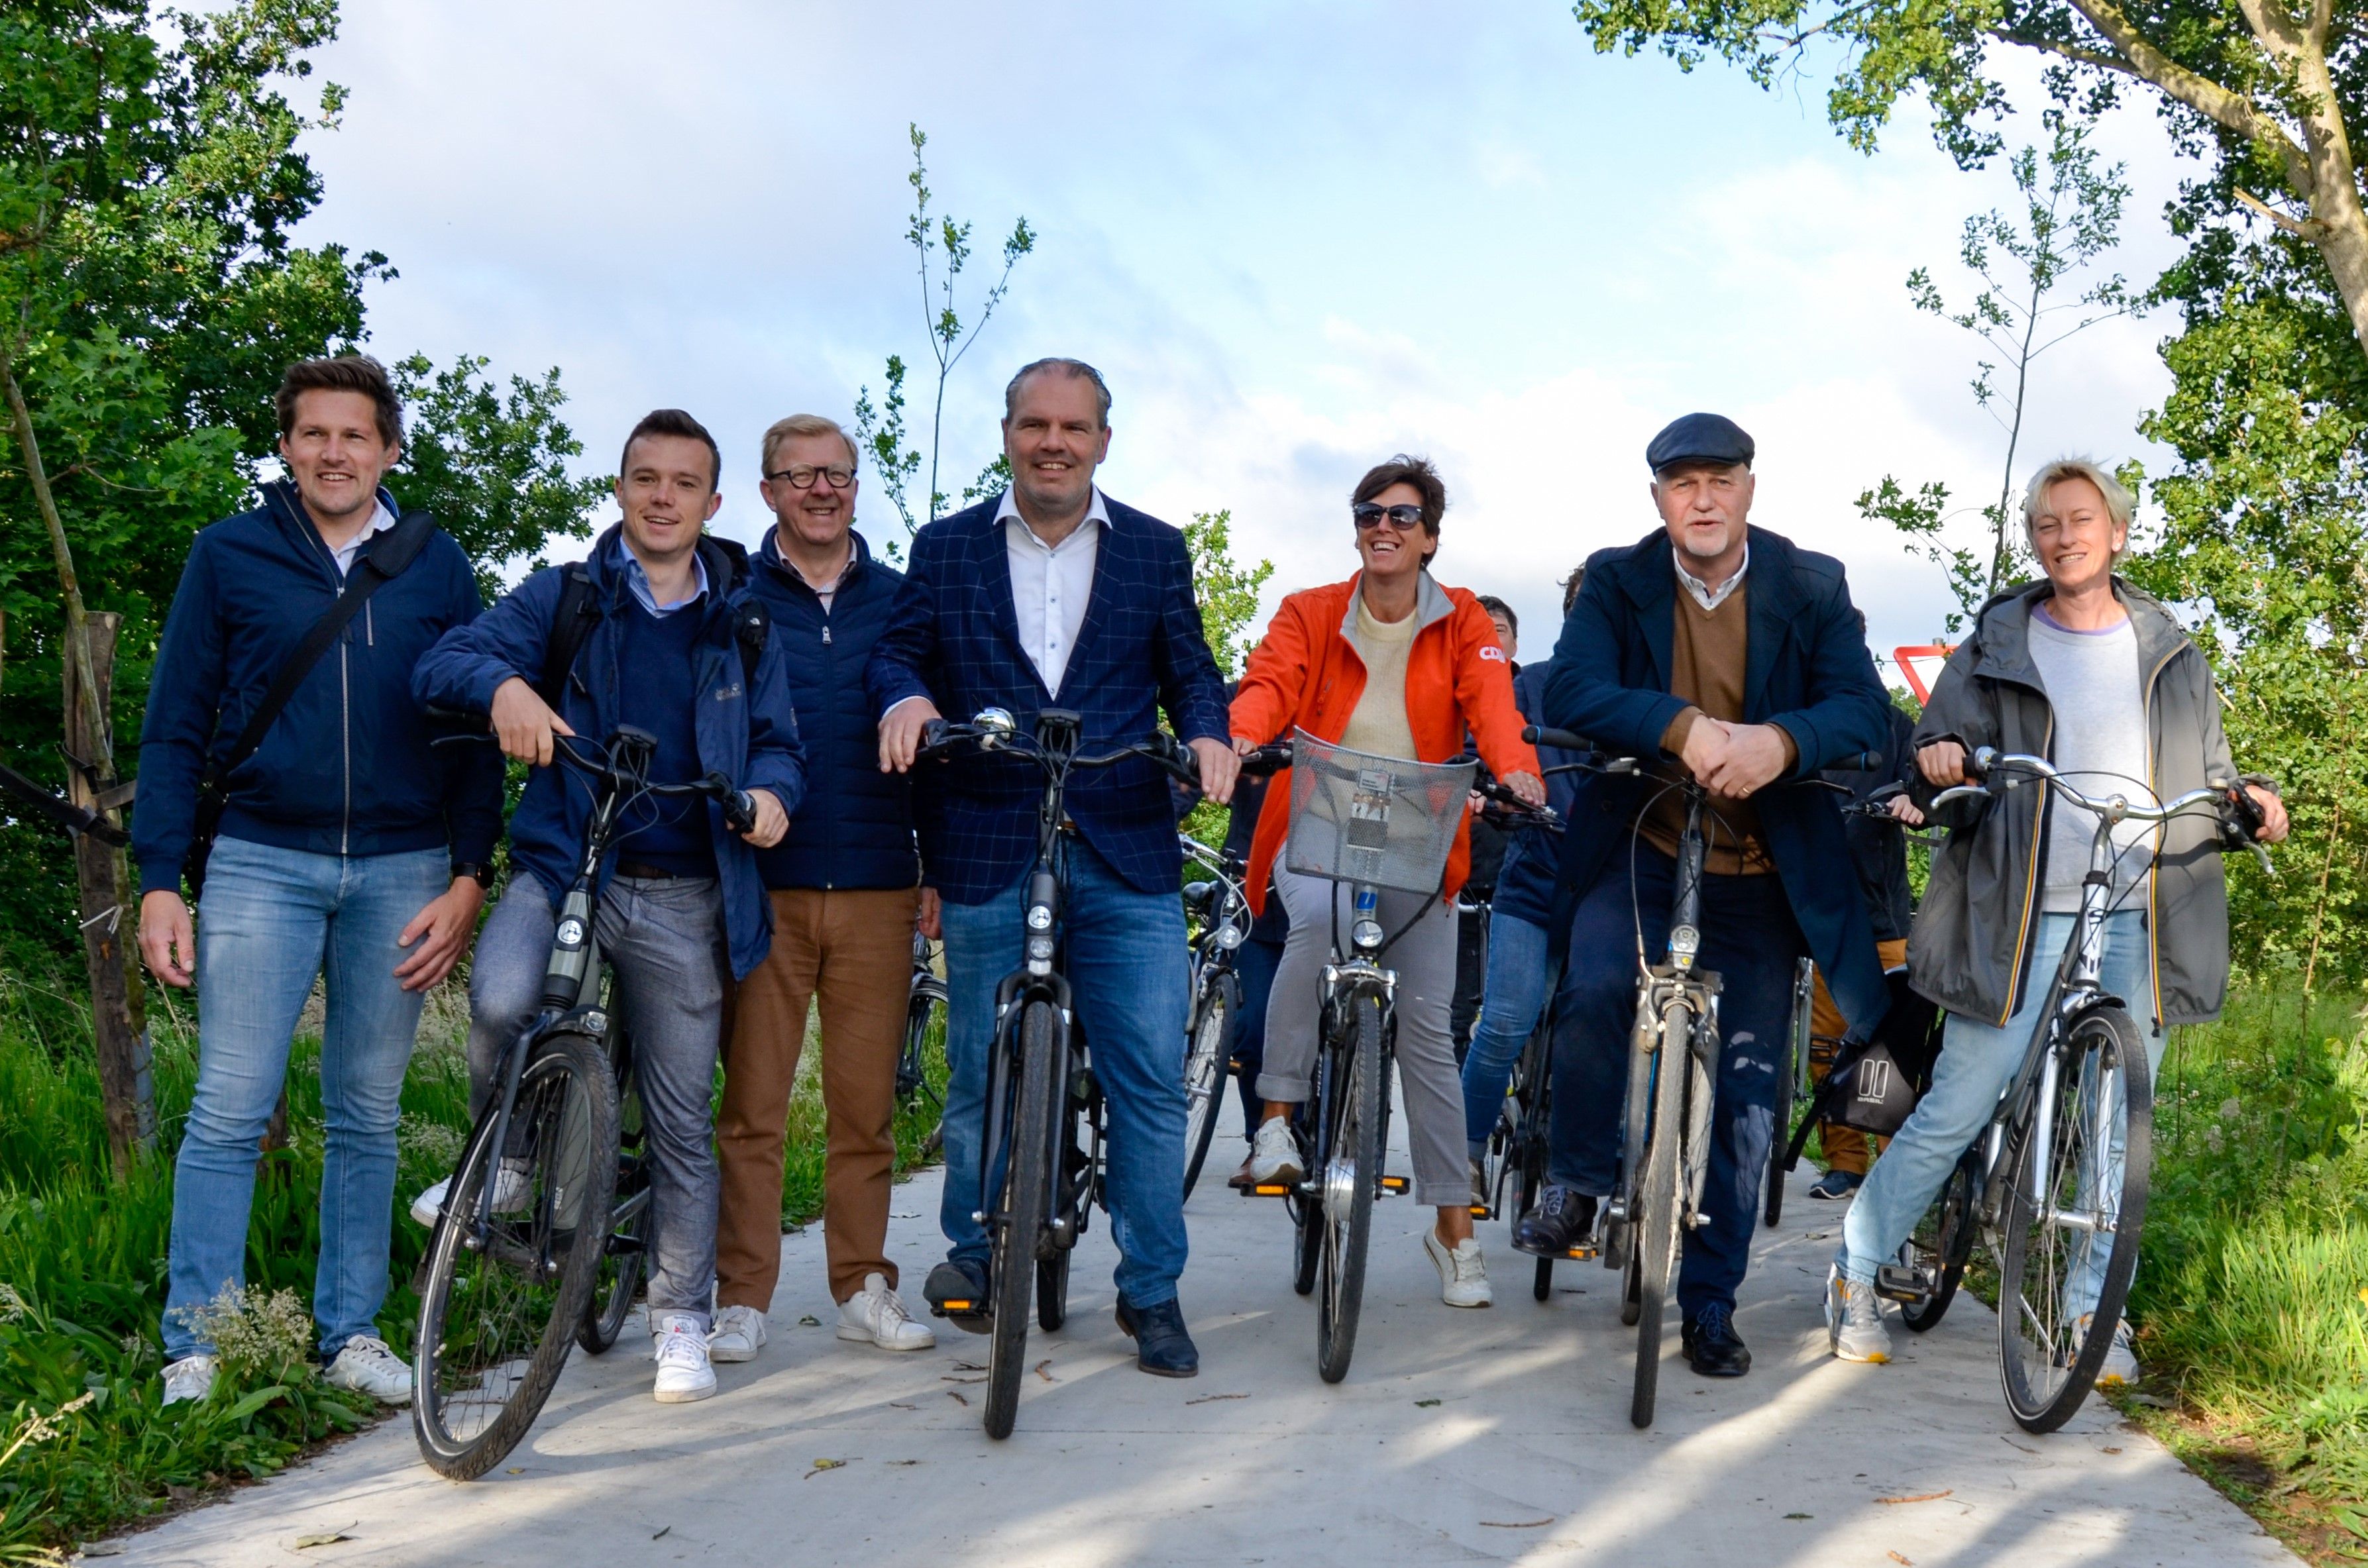 Het gemeentebestuur van Evergem is ruim aanwezig om die fietsverbinding in te rijden samen met de projectpartners